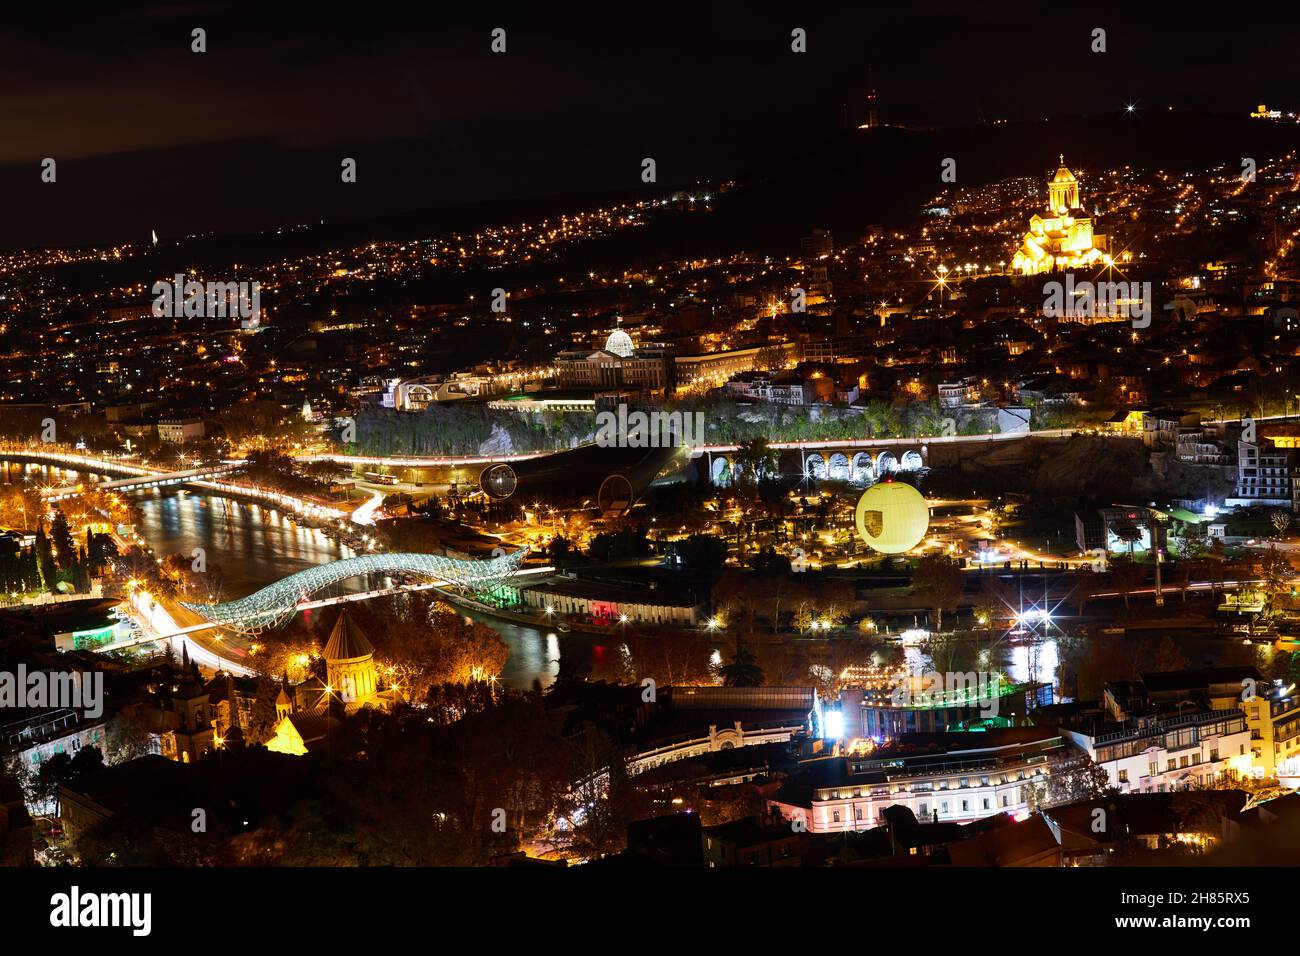 Vue de nuit sur la vieille ville de Tbilissi. Tiflis est la plus grande ville de Géorgie, située sur les rives de la rivière Mtkvari Banque D'Images